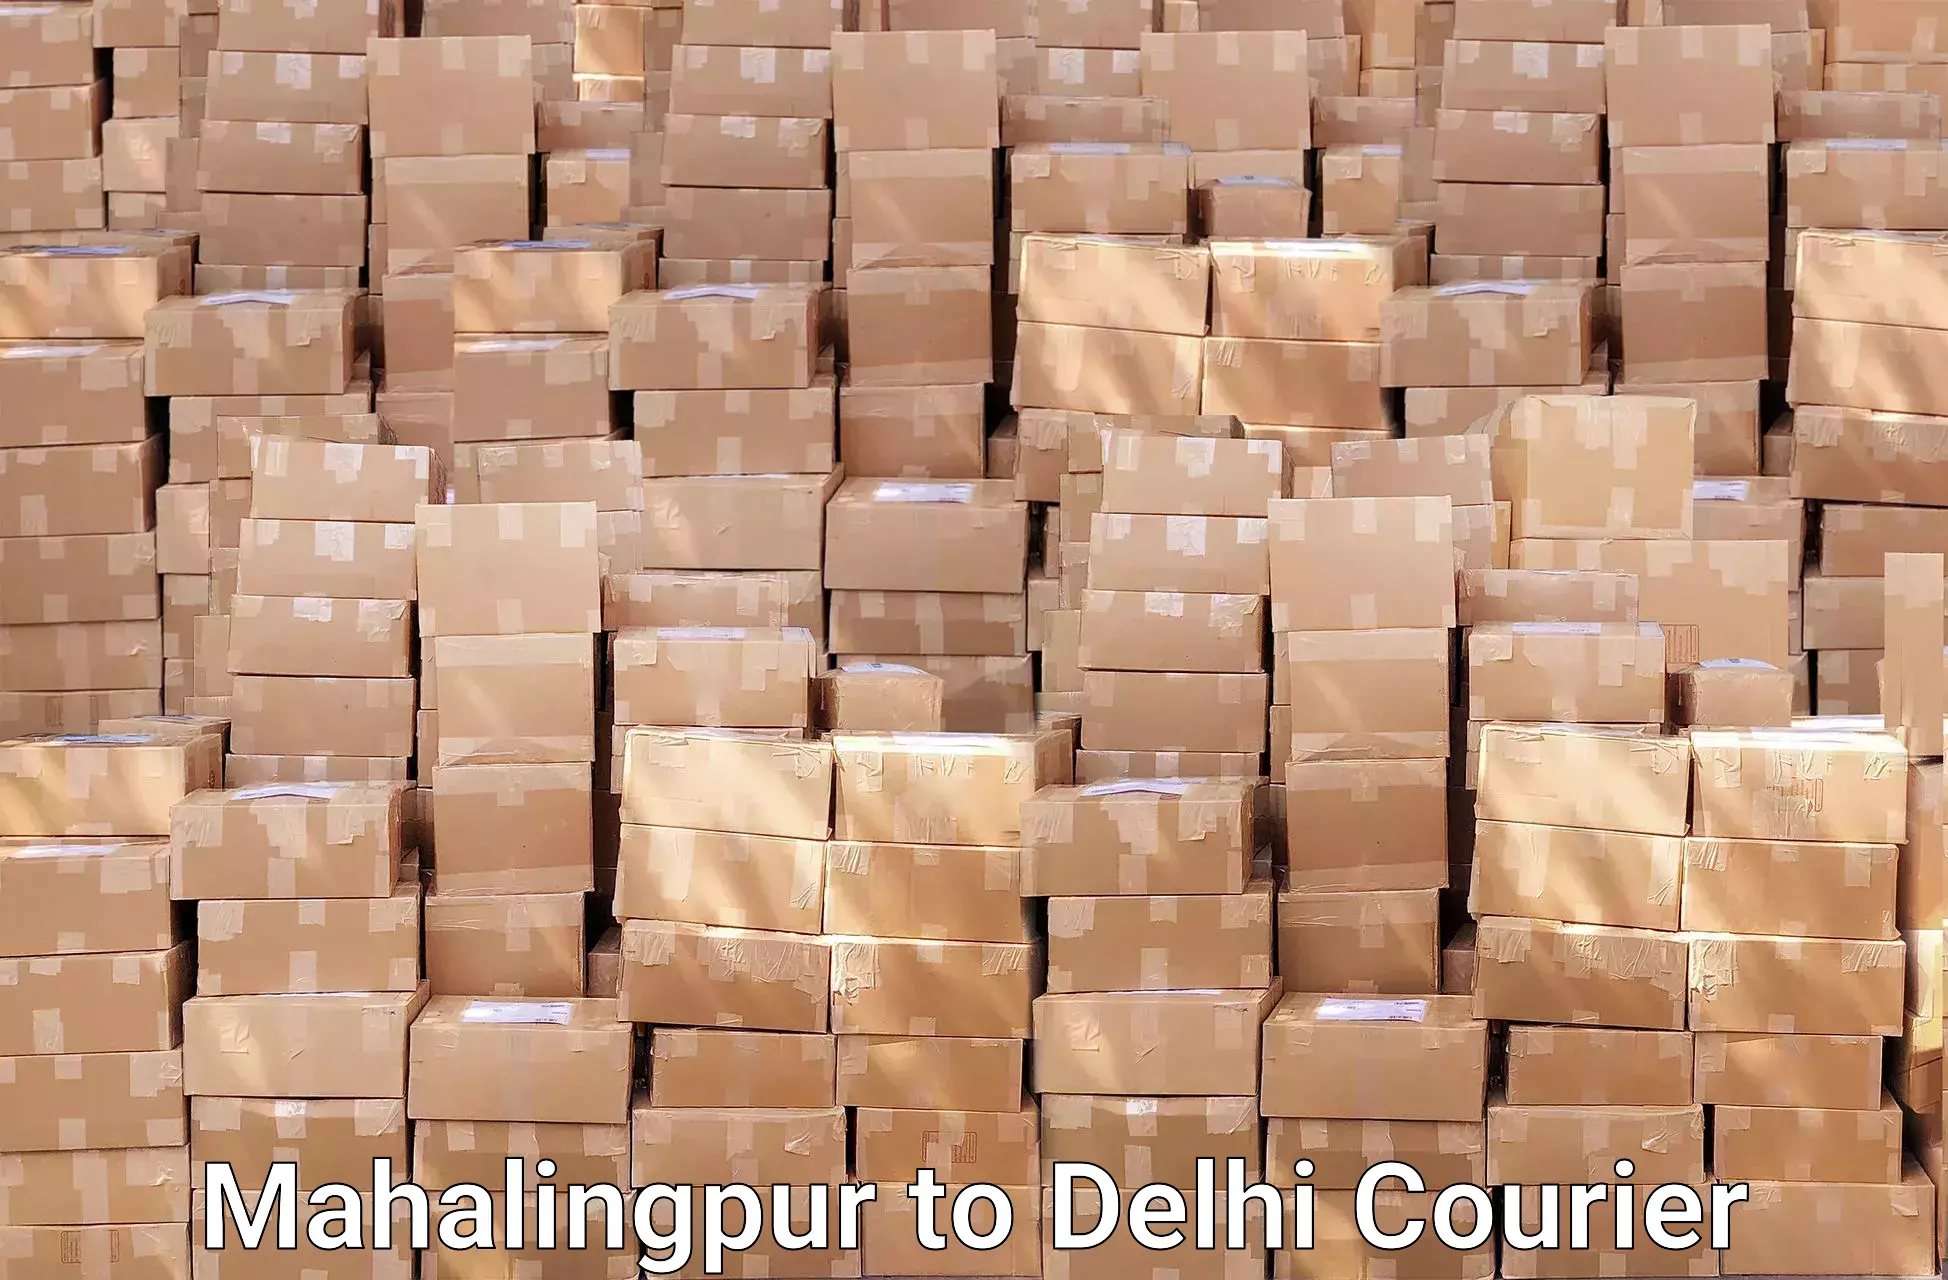 Efficient packing and moving Mahalingpur to Ramesh Nagar